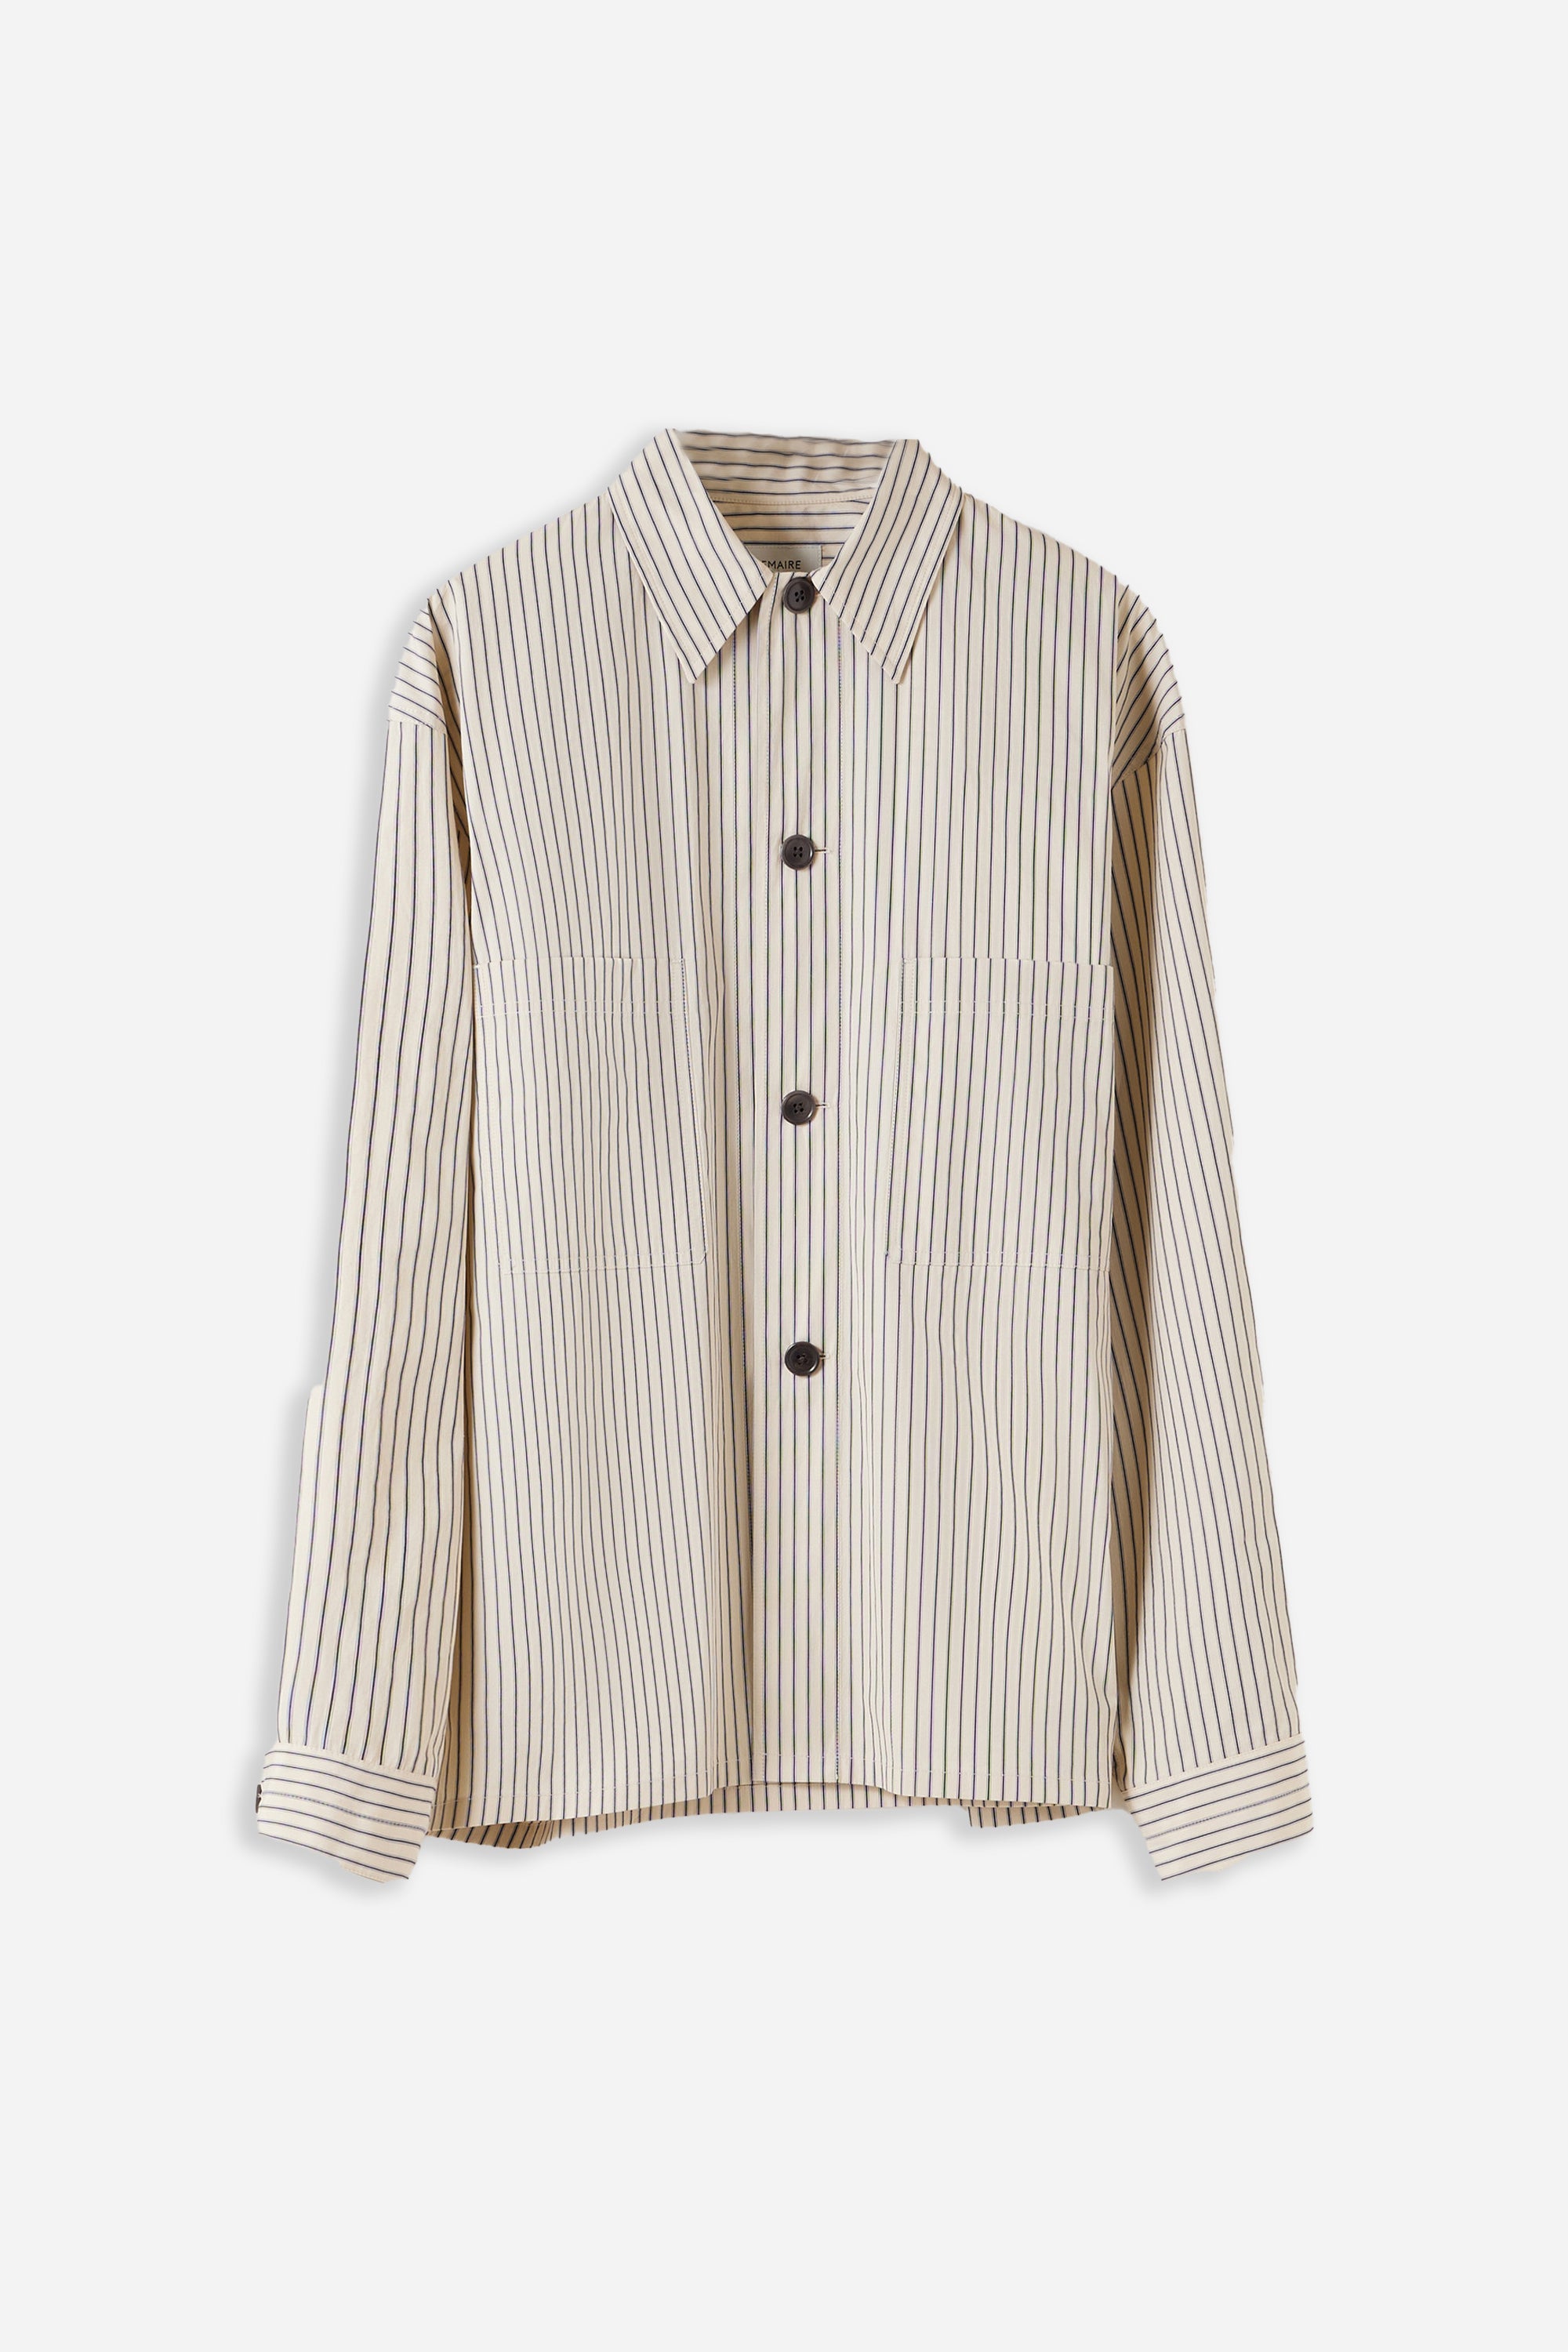 Lemaire Pyjama Shirt Mastic/Navy/White – HAVN